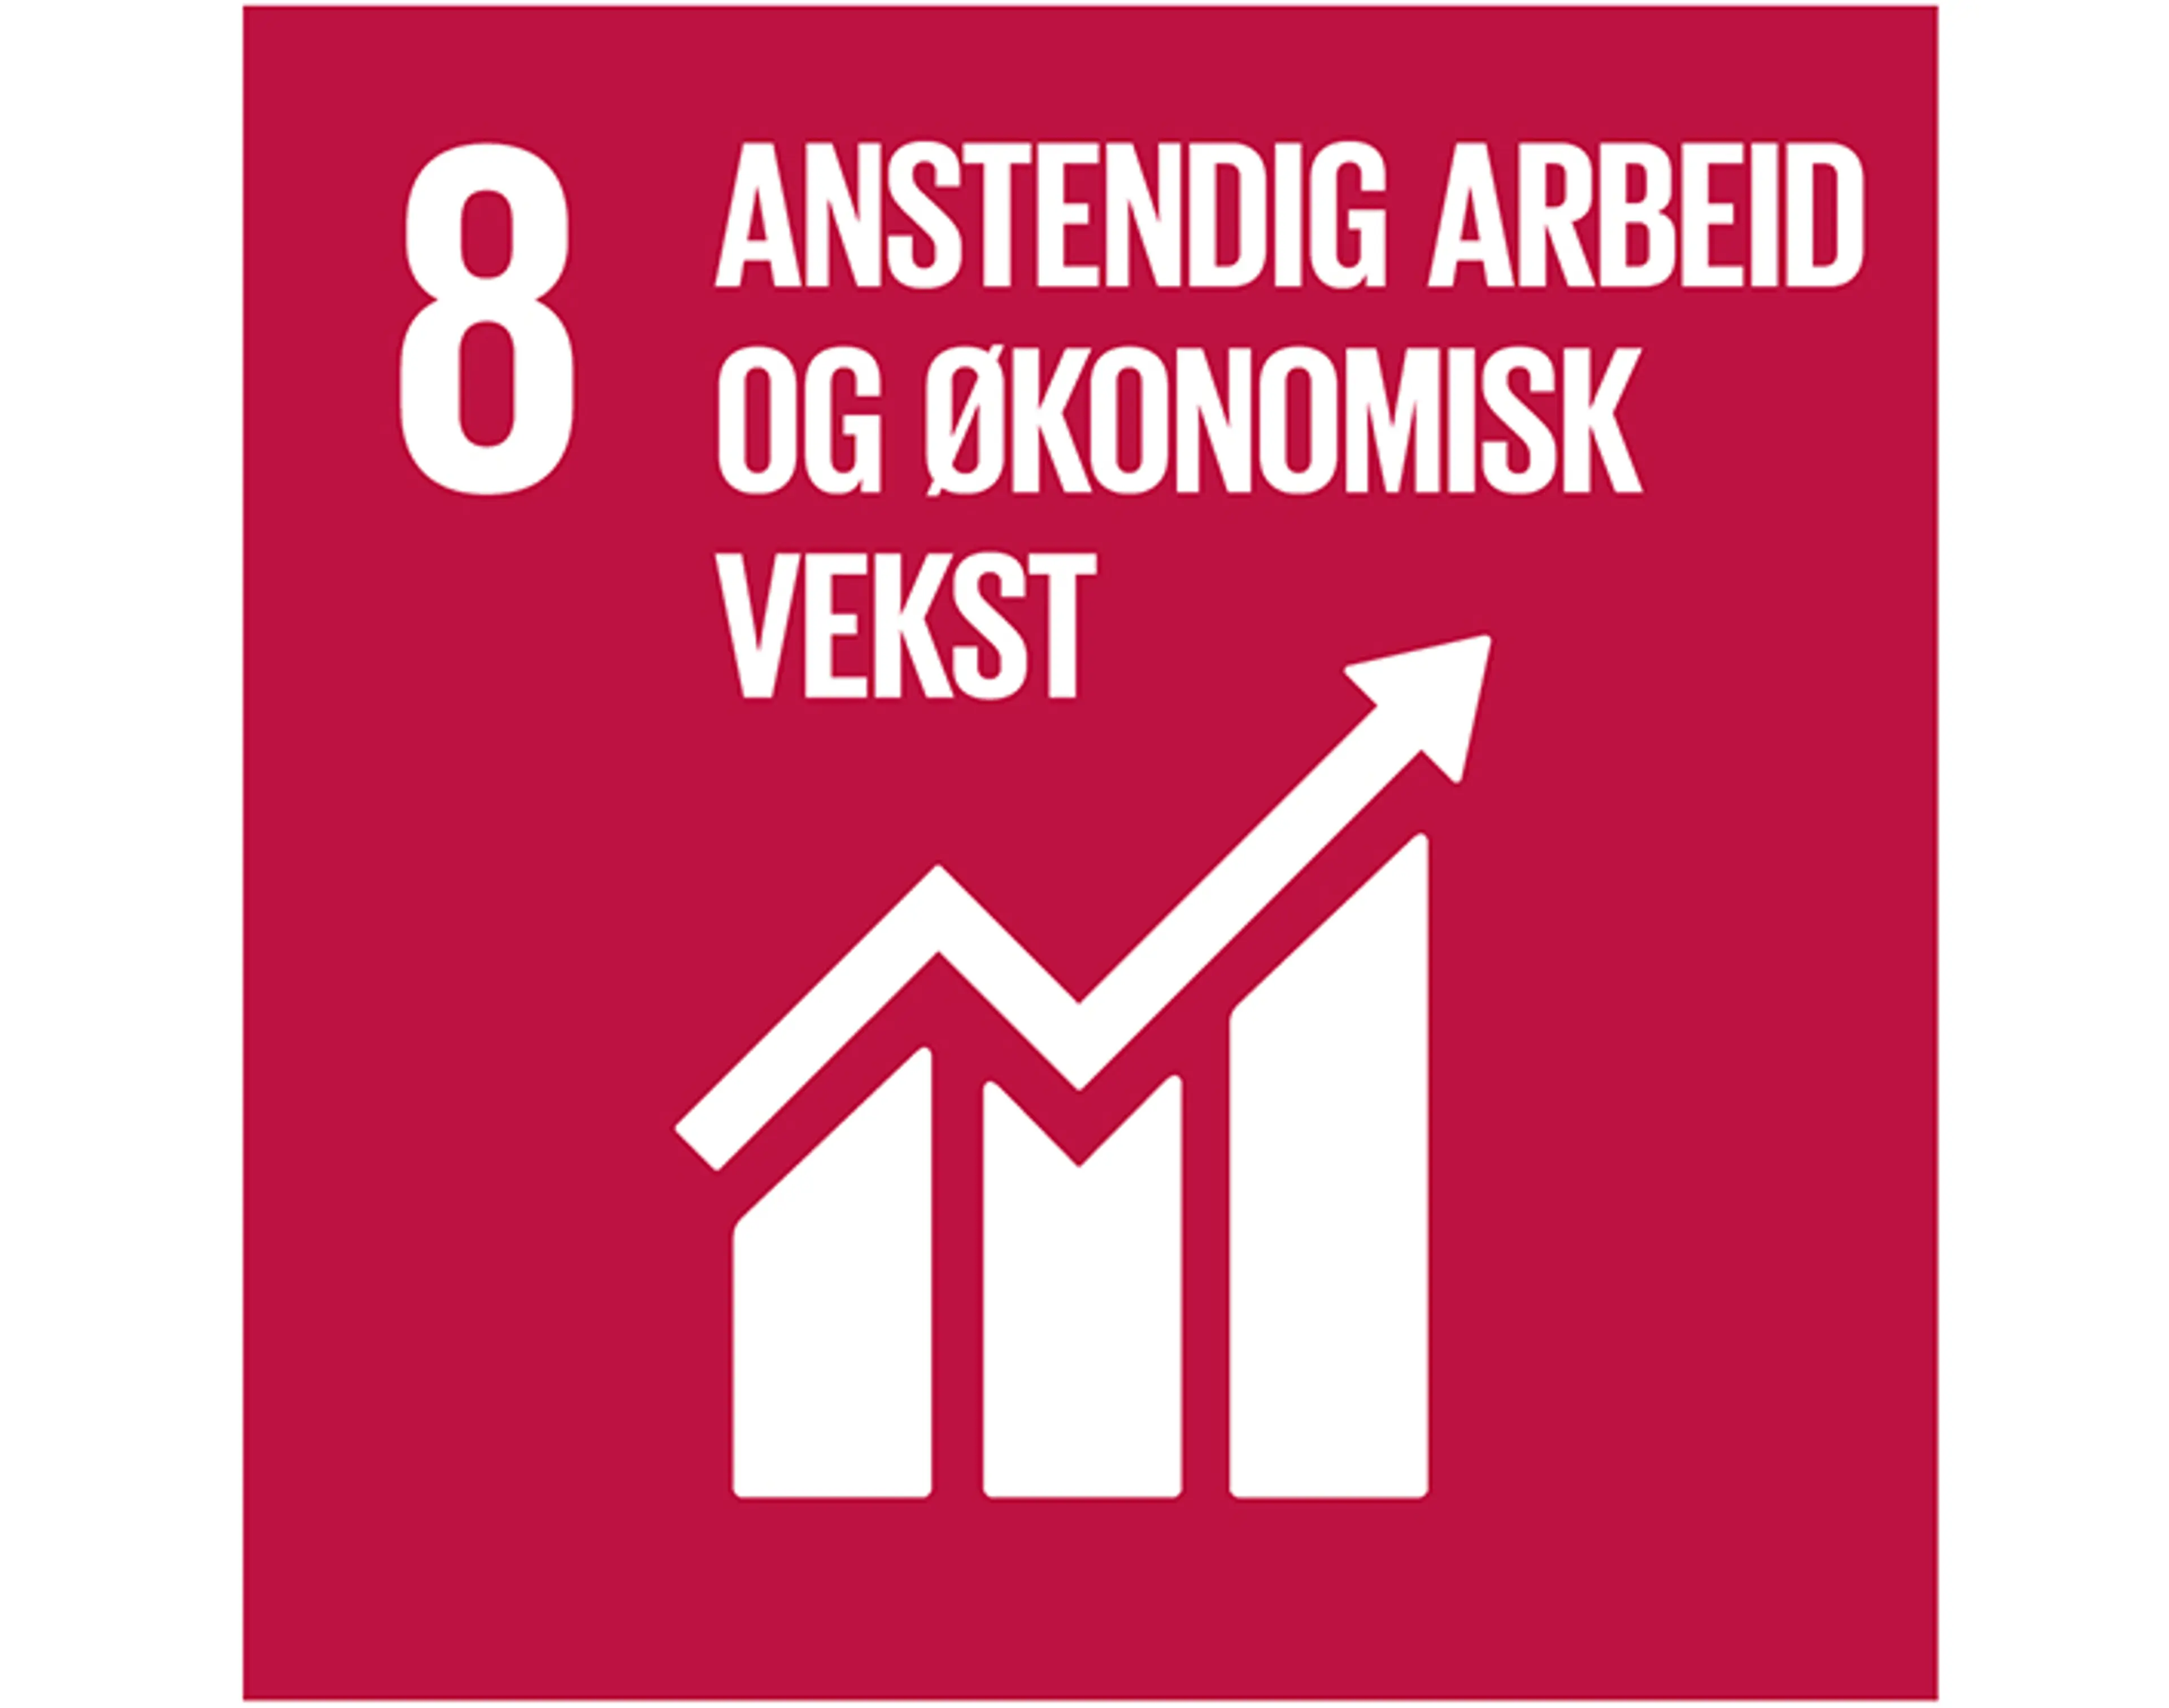 FNs bærekraftsmål nr. 8: Anstendig arbeid og økonomisk vekst